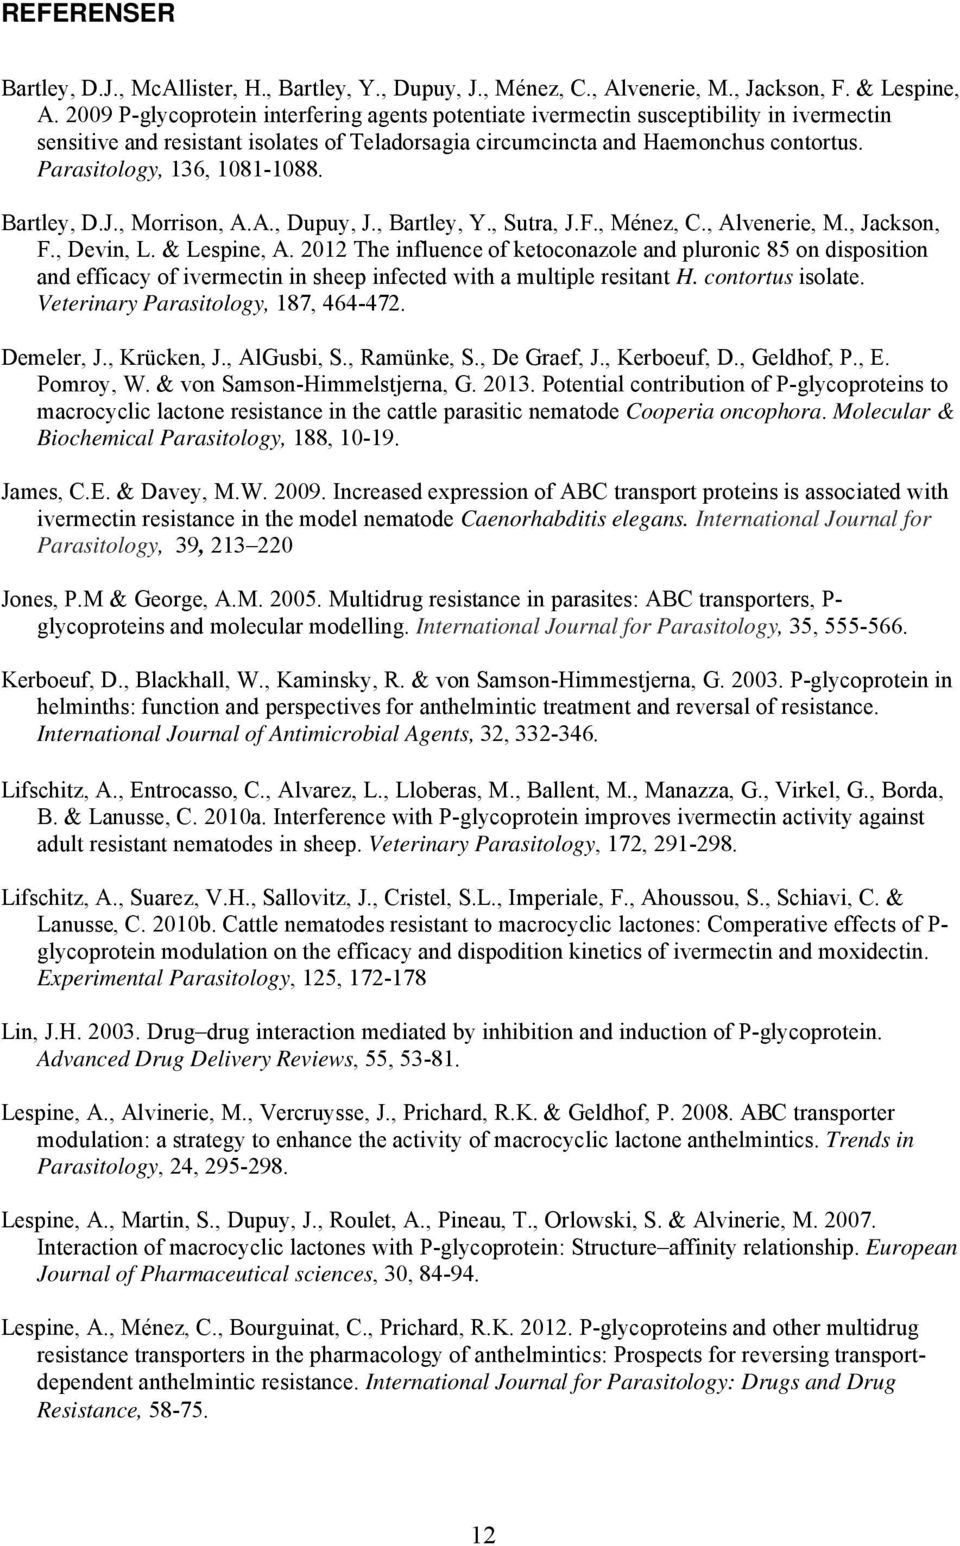 Parasitology, 136, 1081-1088. Bartley, D.J., Morrison, A.A., Dupuy, J., Bartley, Y., Sutra, J.F., Ménez, C., Alvenerie, M., Jackson, F., Devin, L. & Lespine, A.